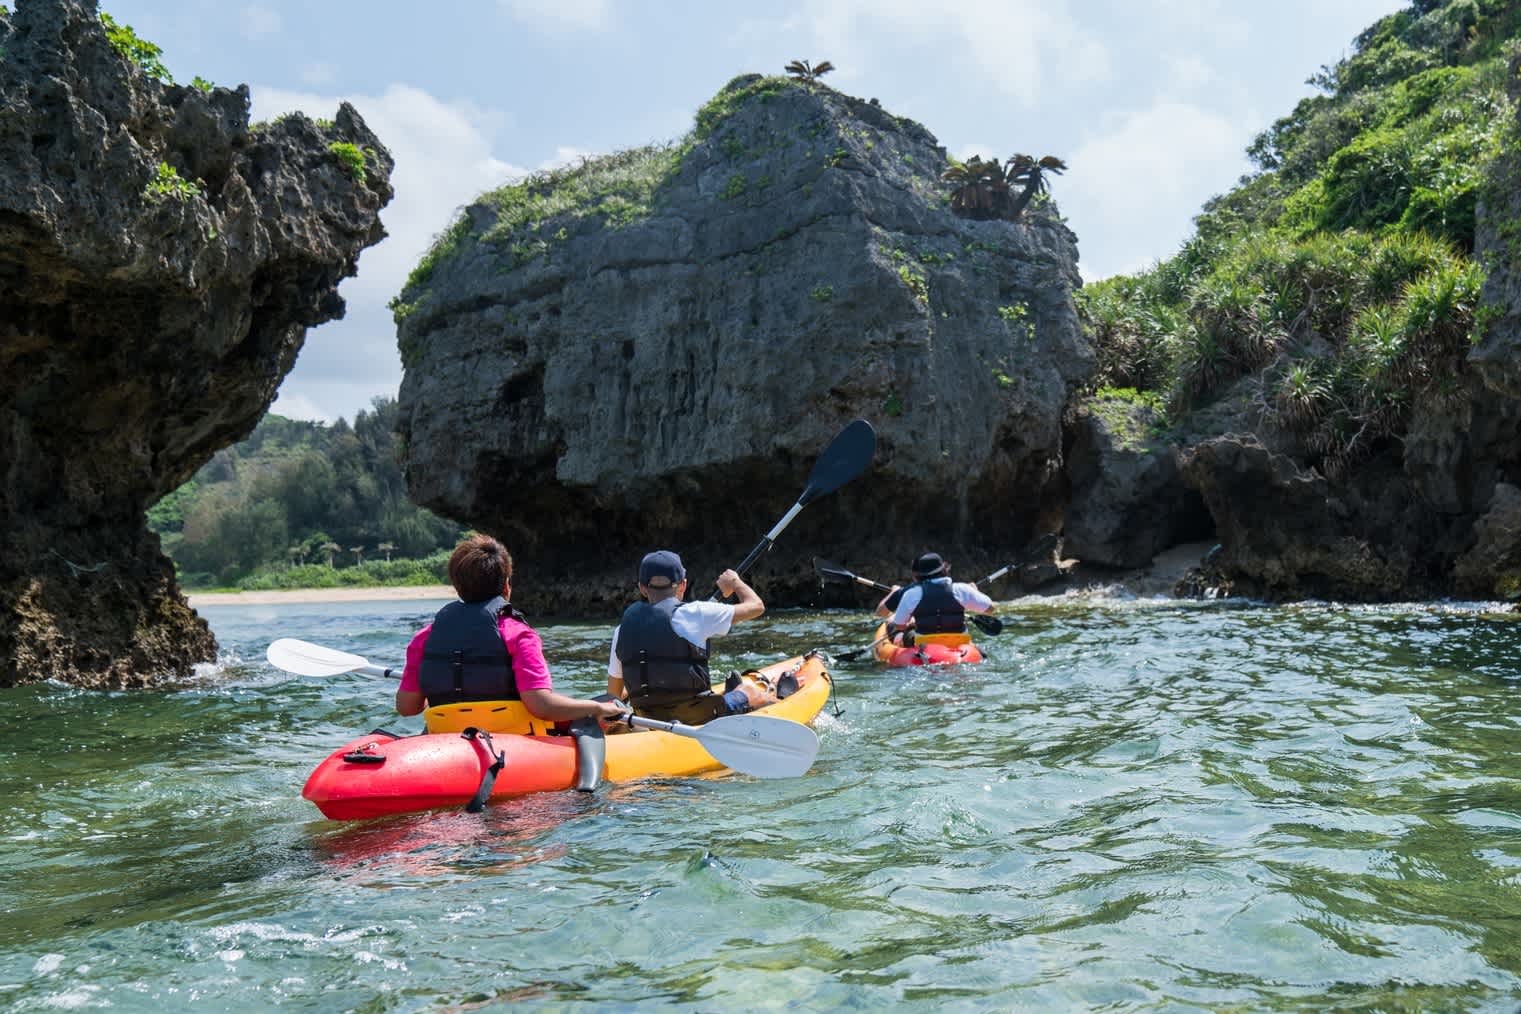 Eine Reisegruppe bei einer Kajaktour auf dem Wasser umgeben von großen Felsen